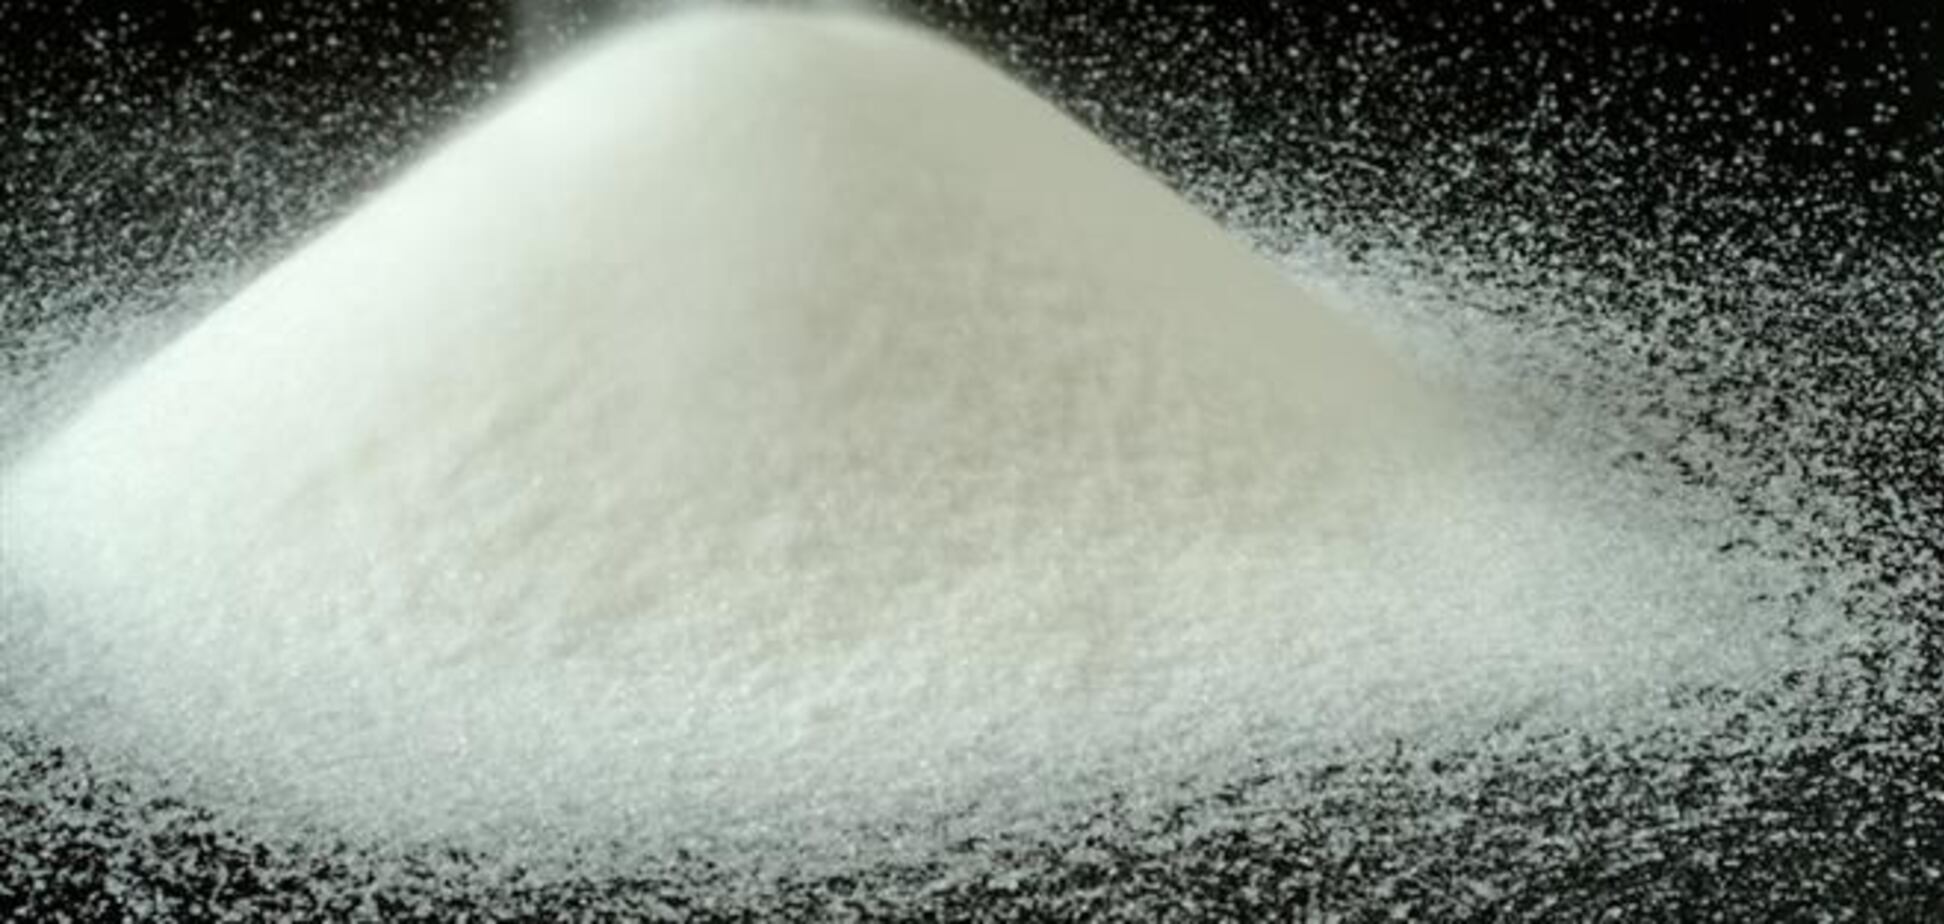 В мире резко повышаются цены на сахар